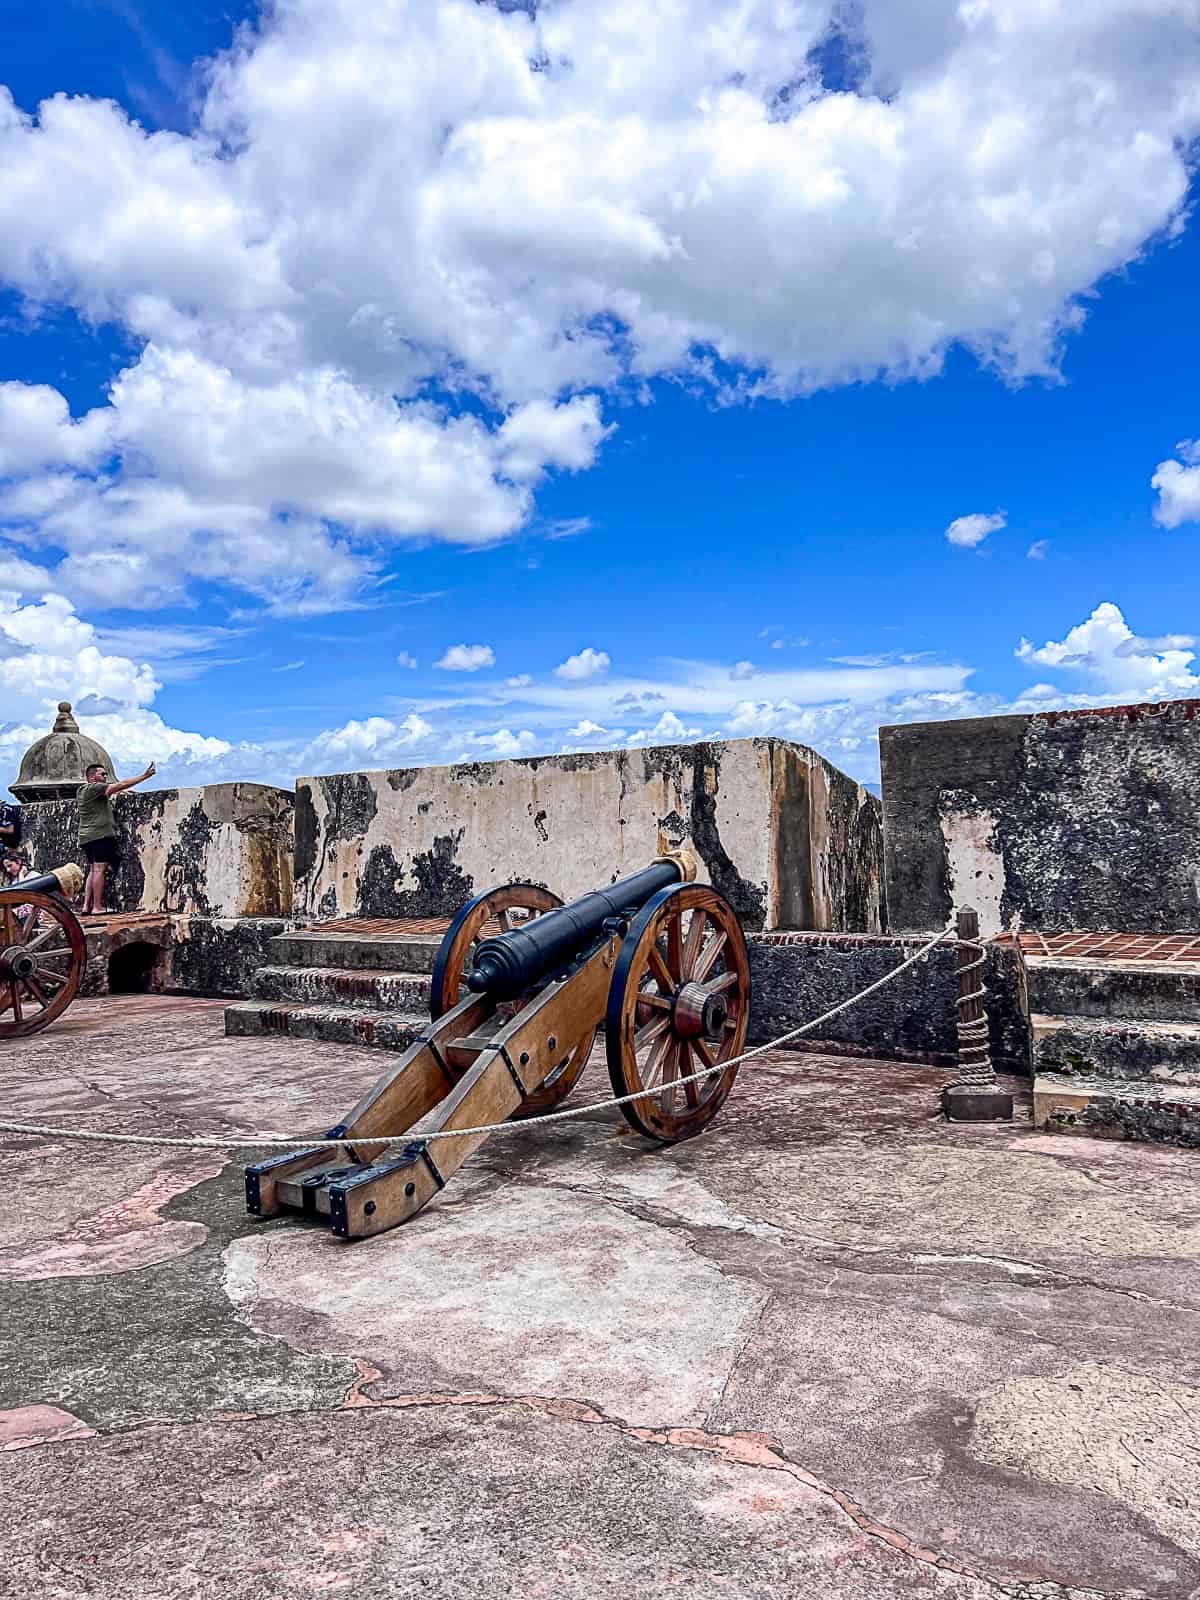 Cannon Display at San Felipe Del Morro Castle